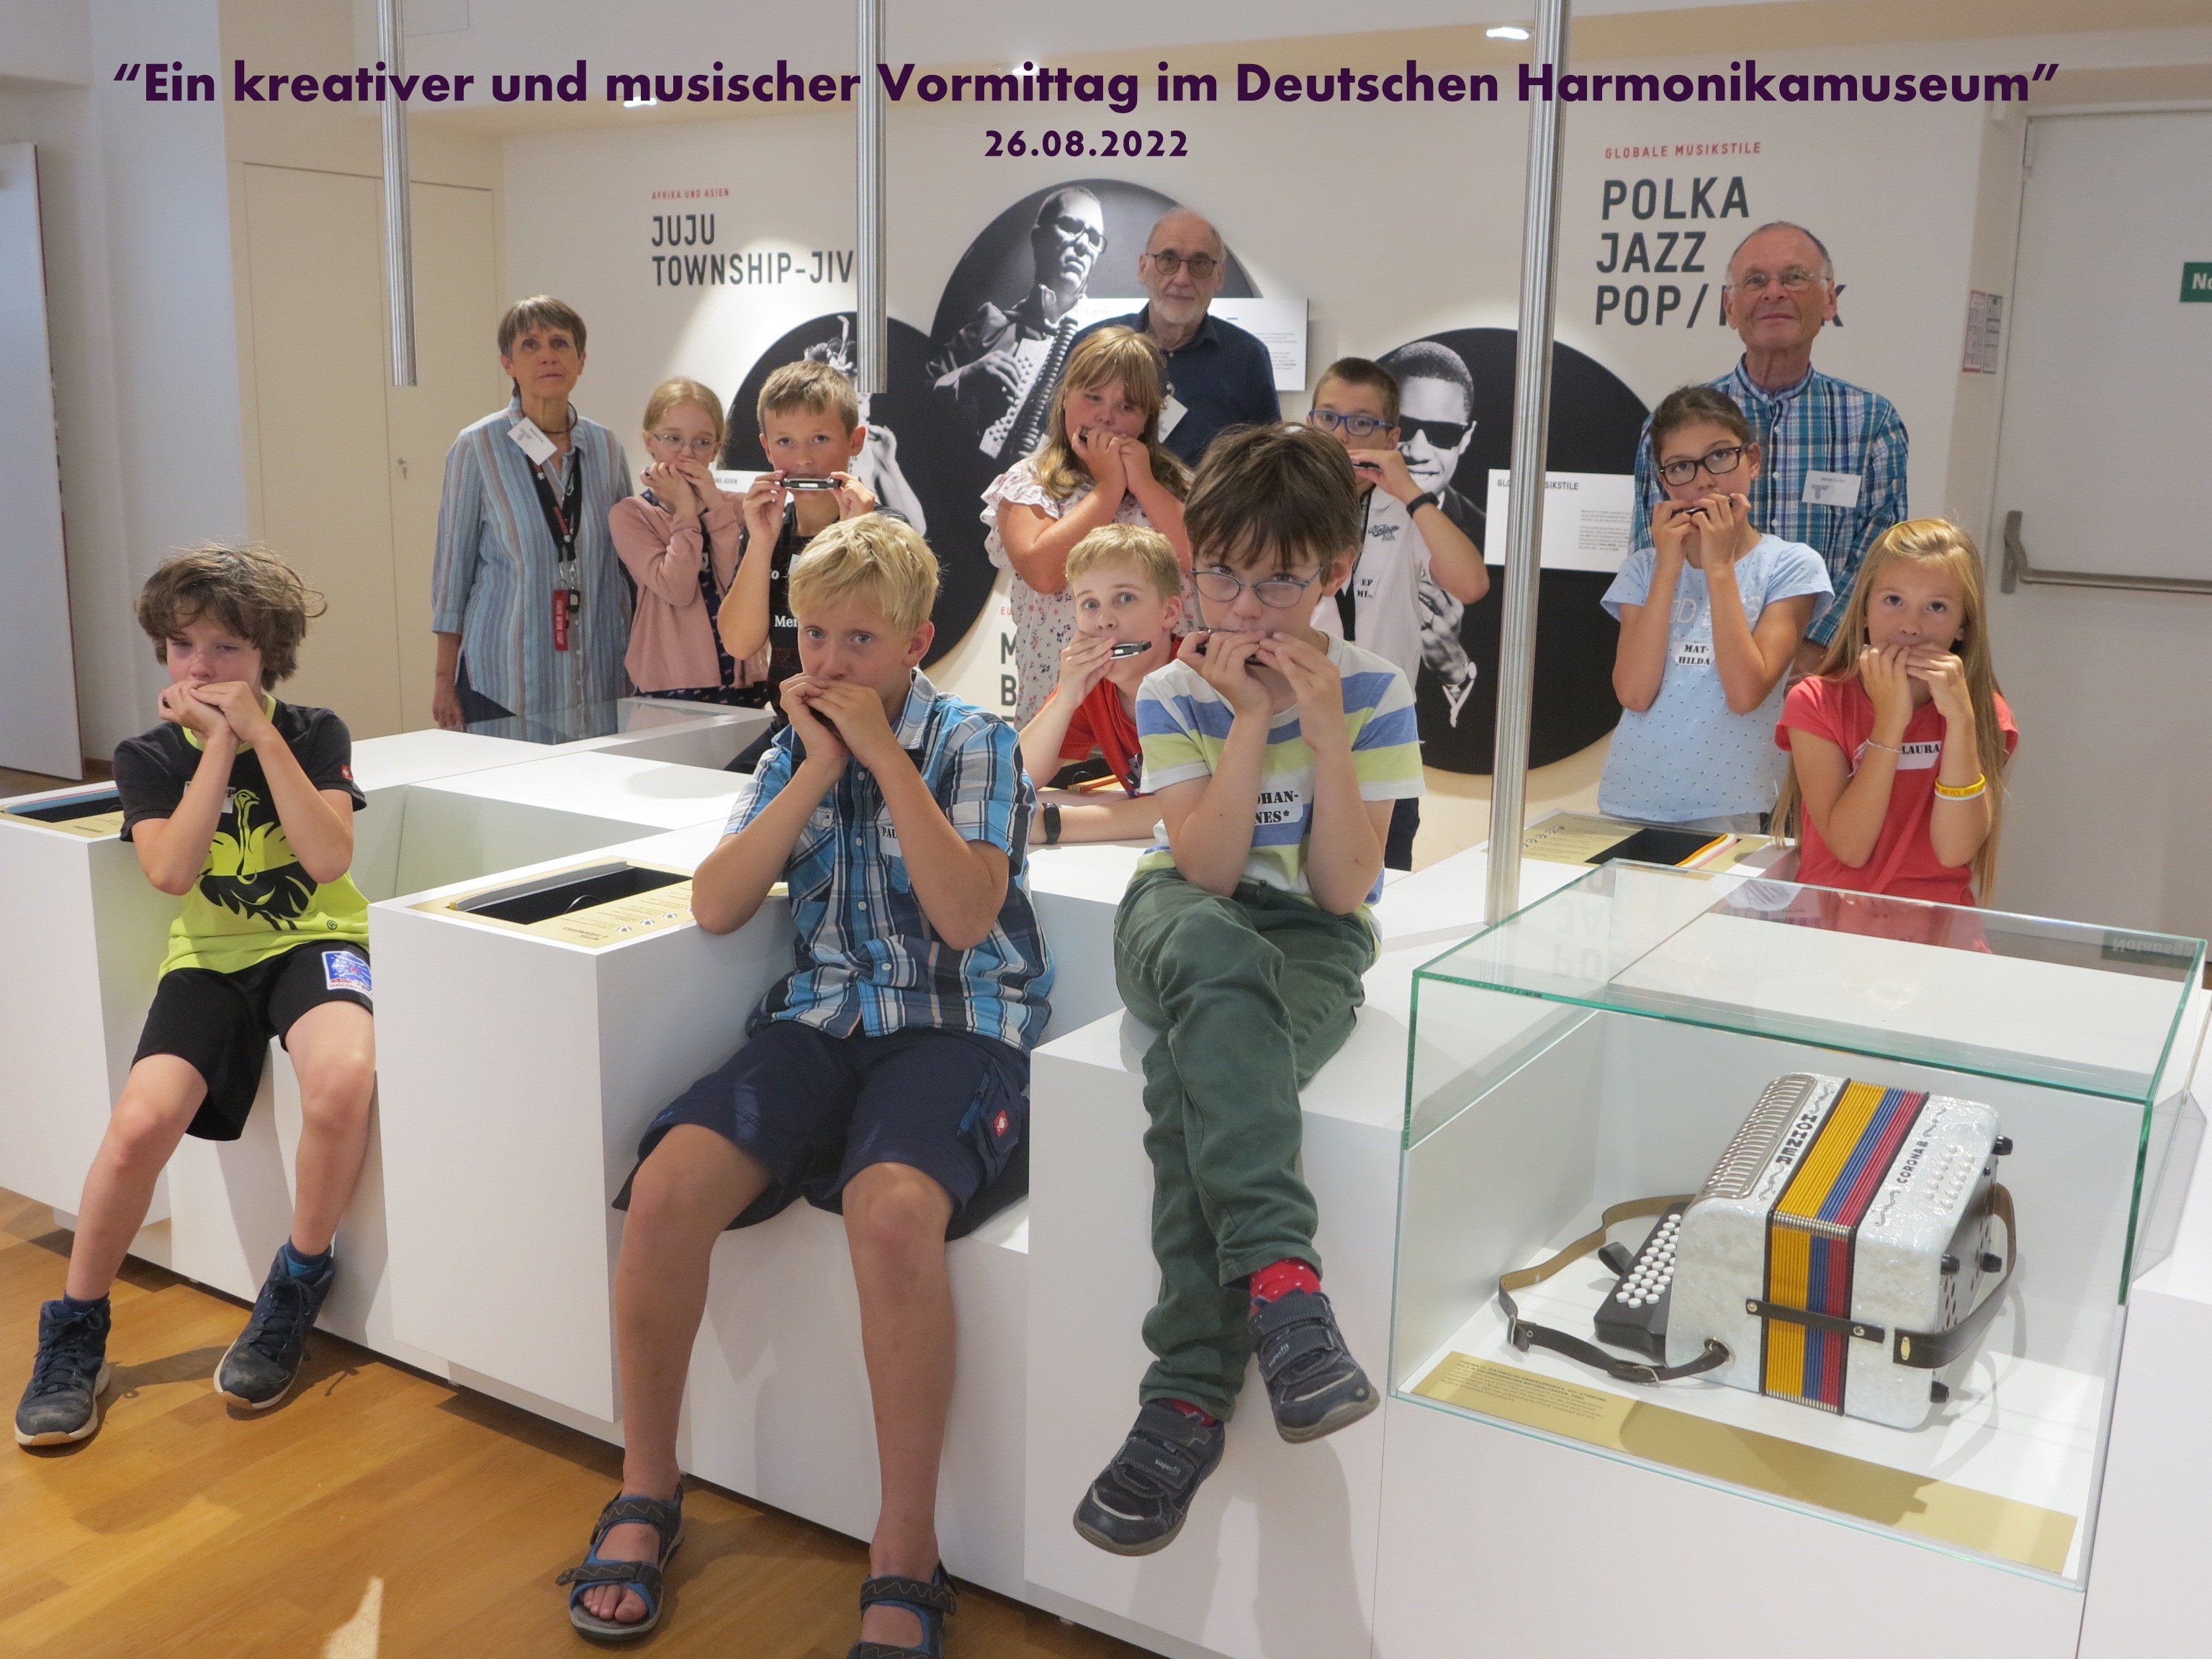 
    
            
                    Ein kreativer und musischer Vormittag im Harmonikamuseum
                
        
